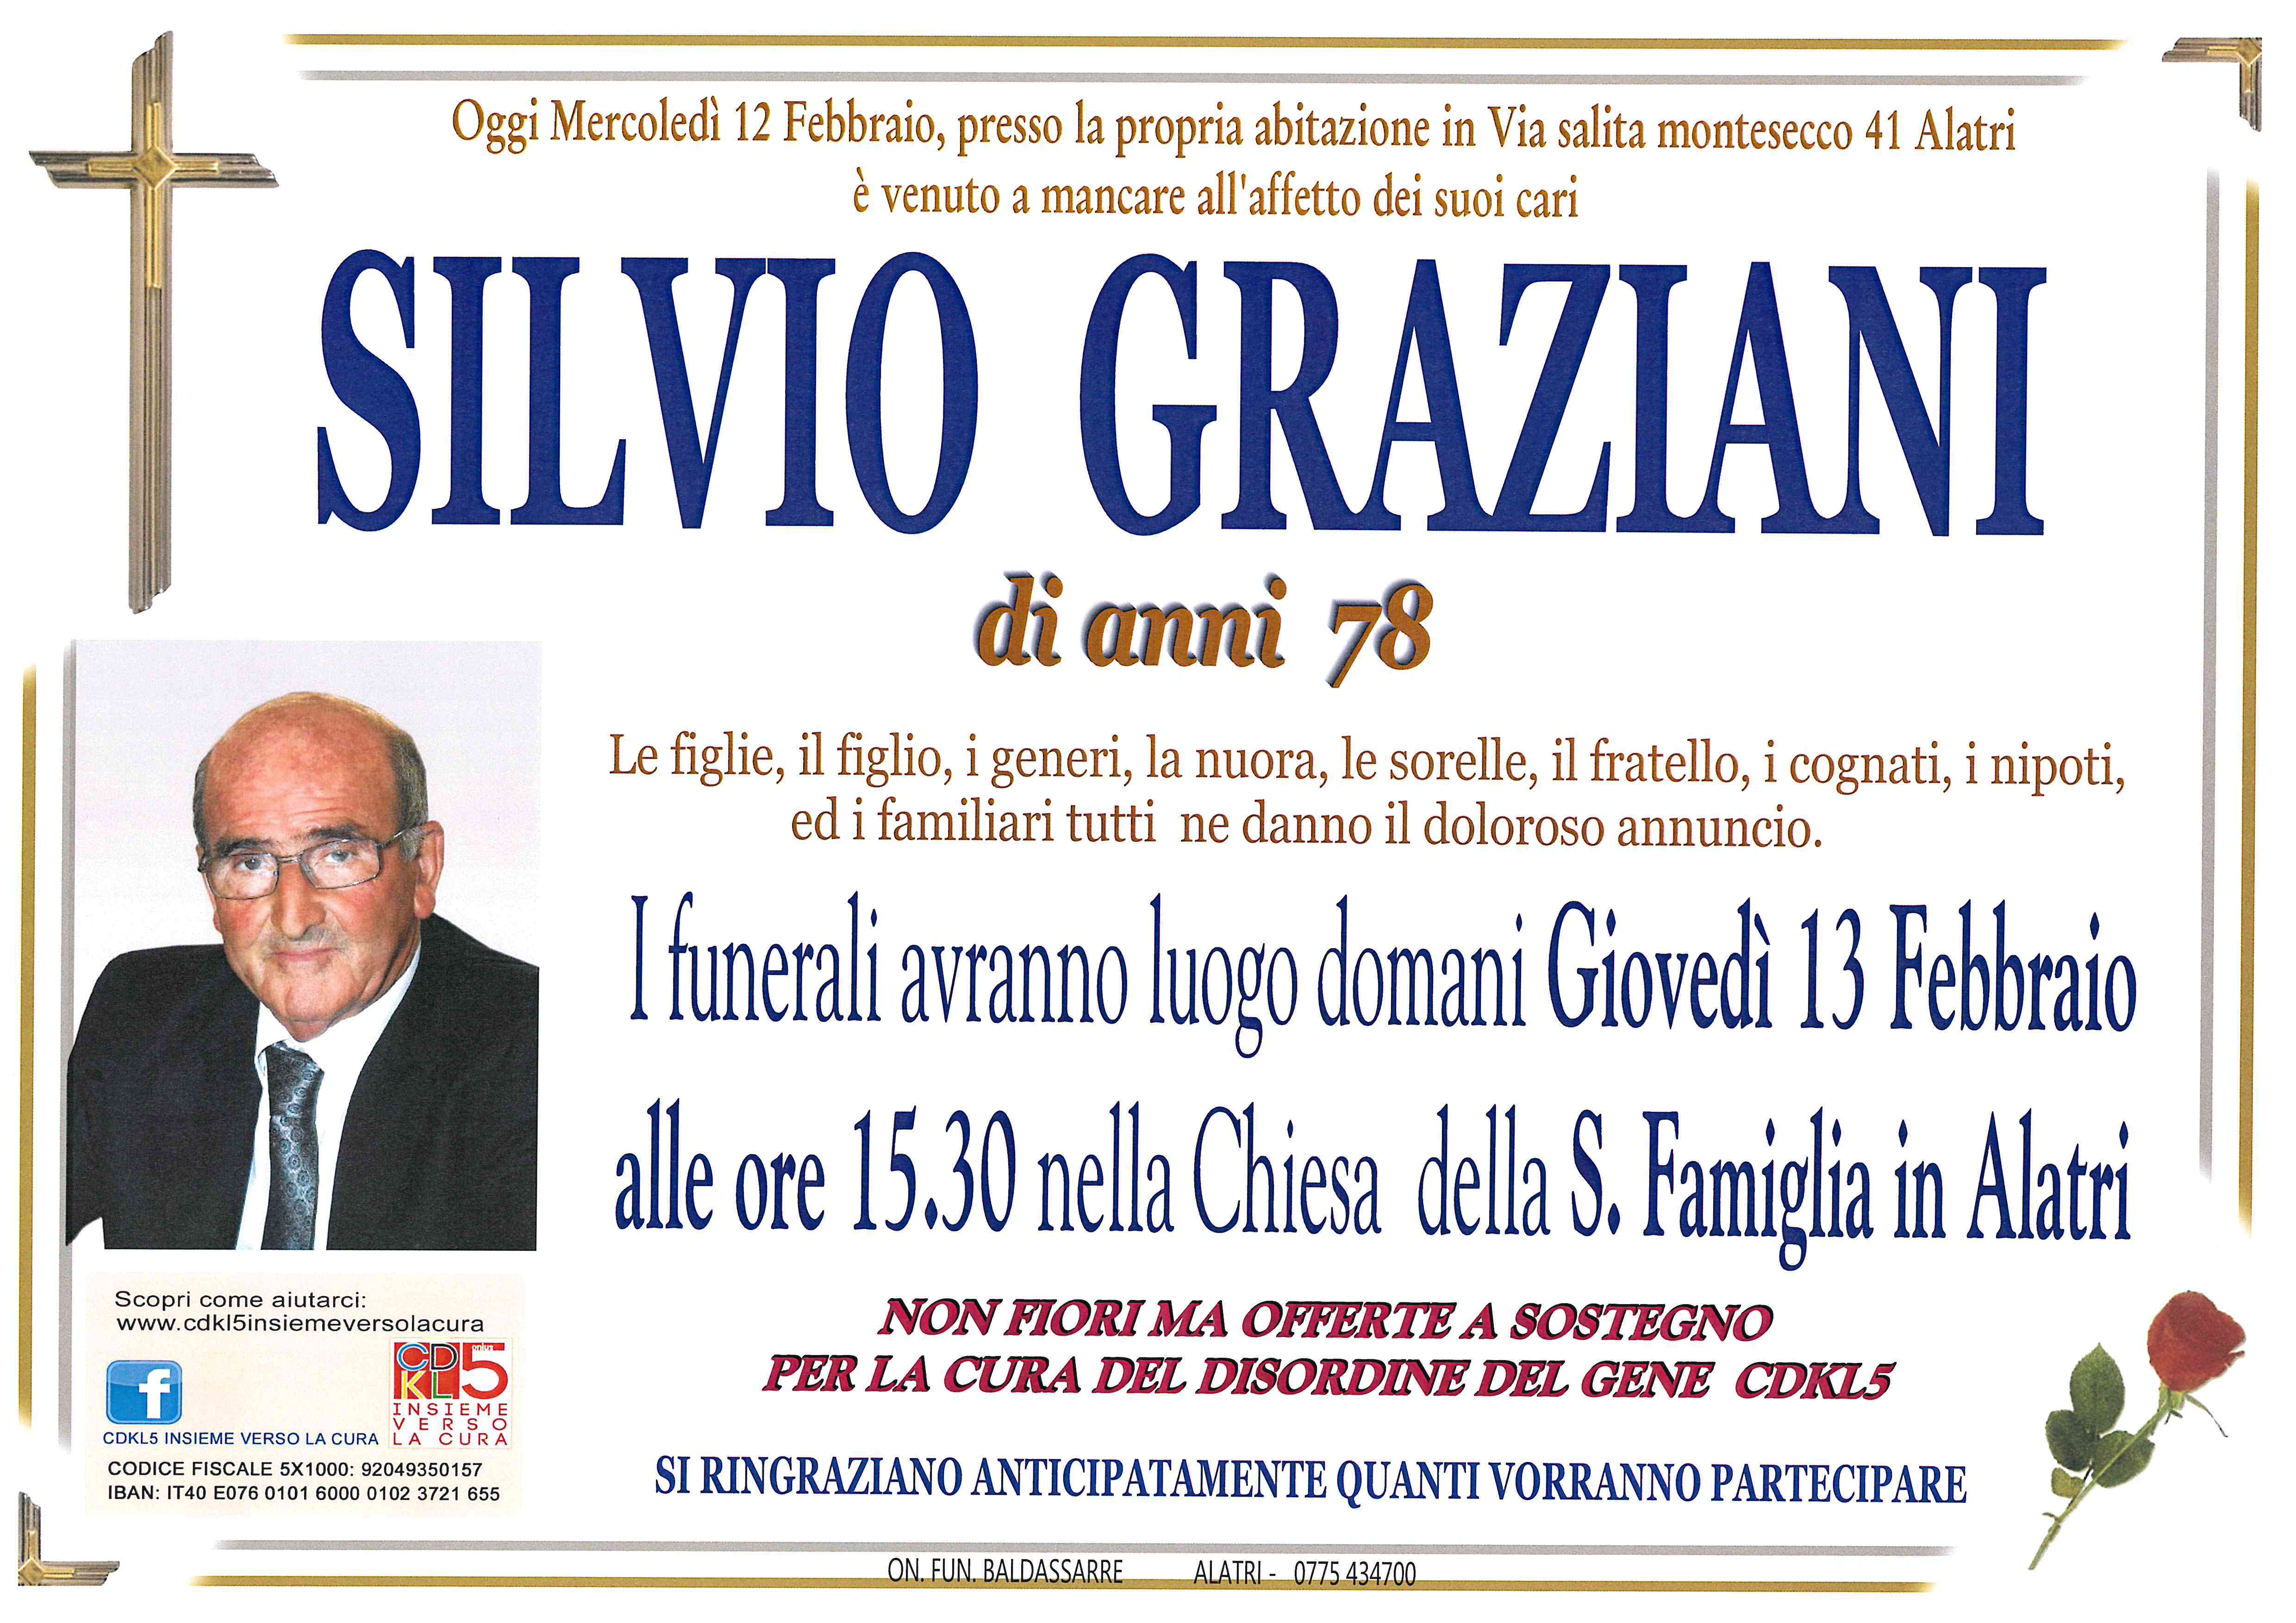 Silvio Graziani